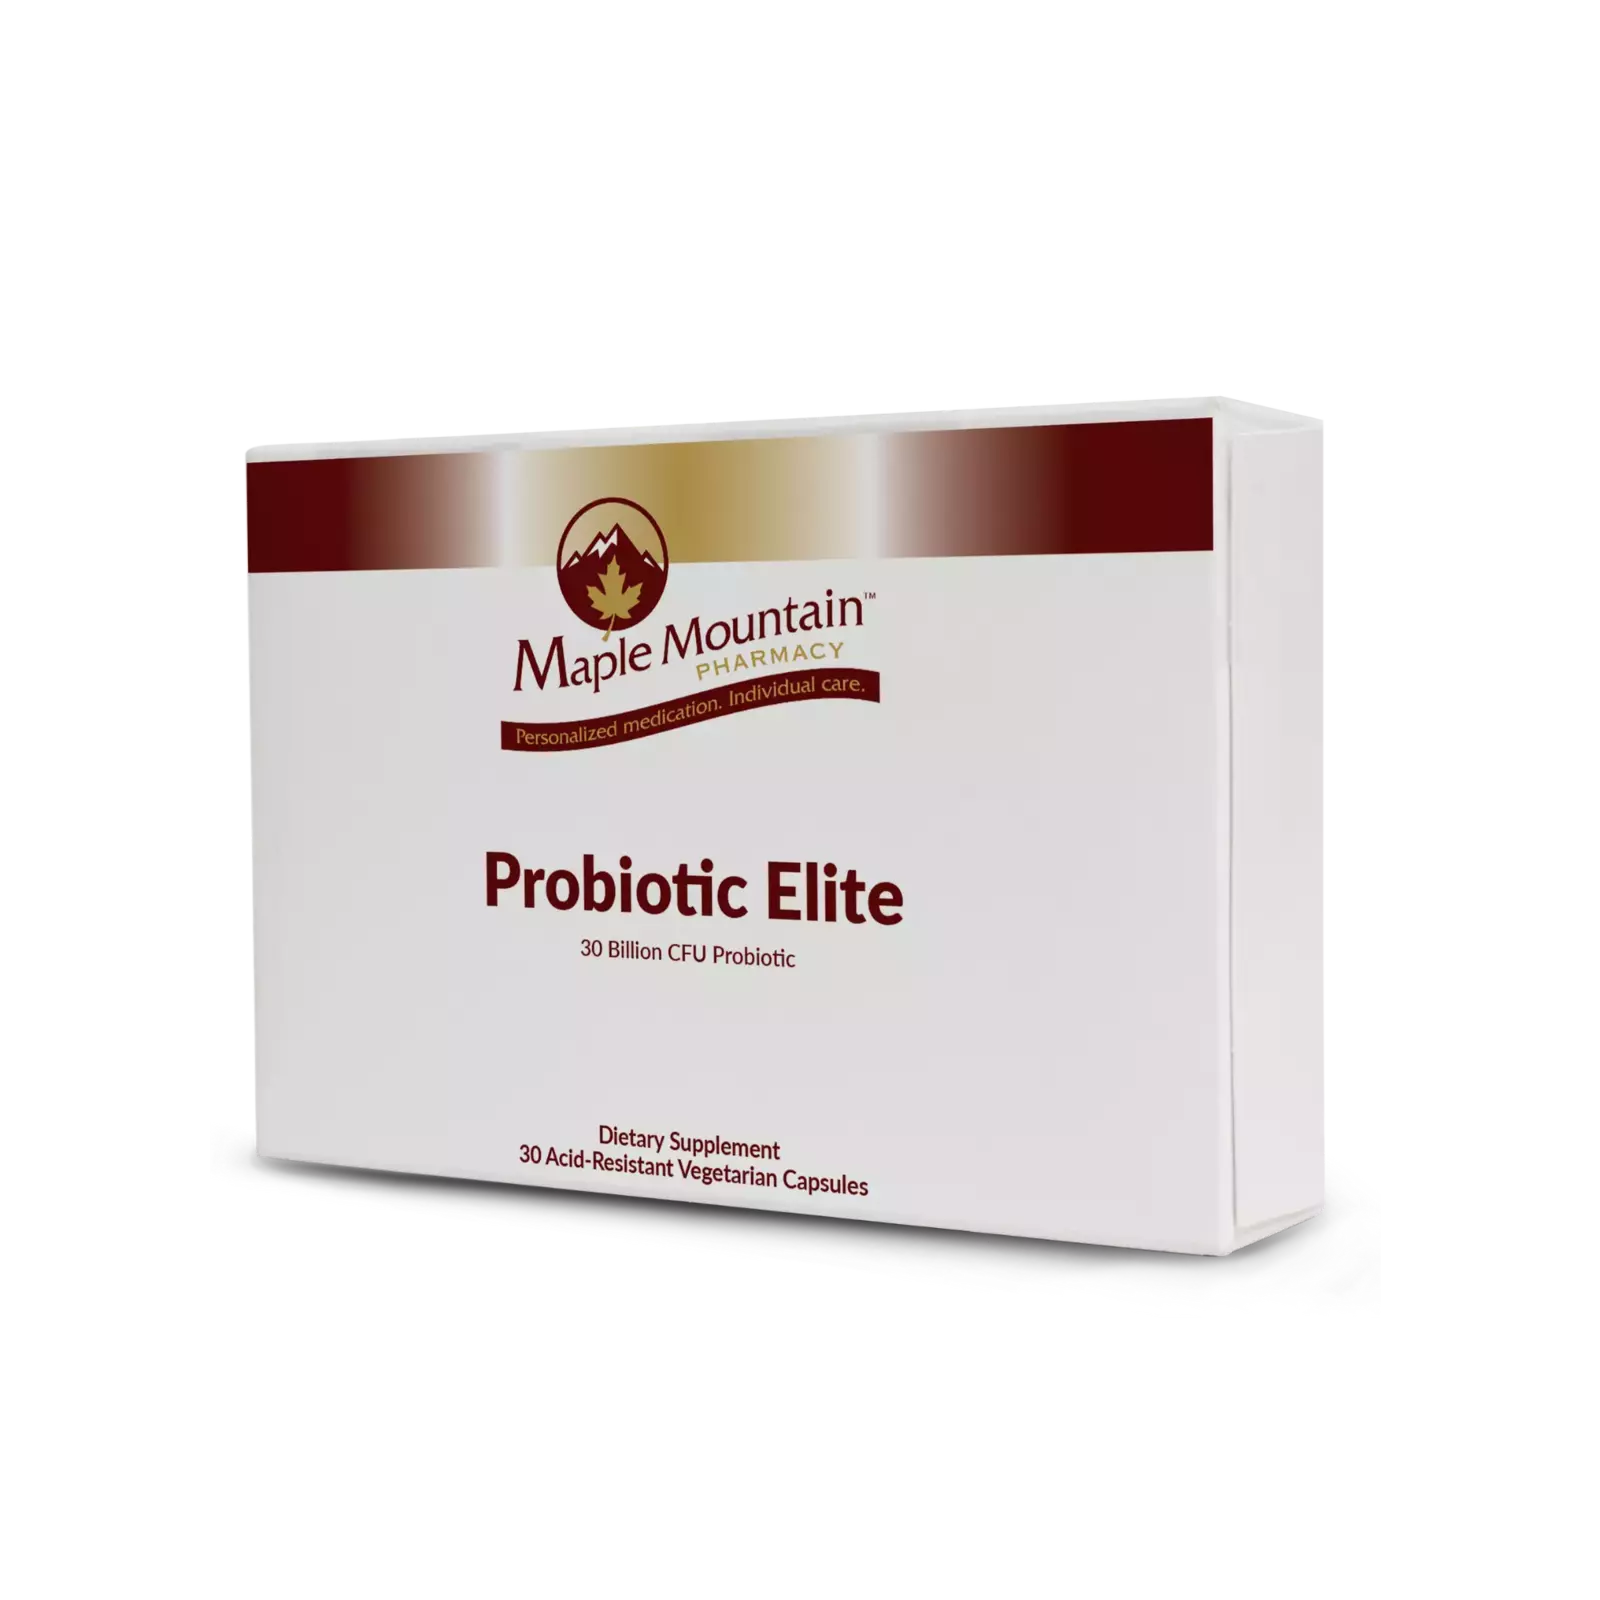 Probiotic Elite